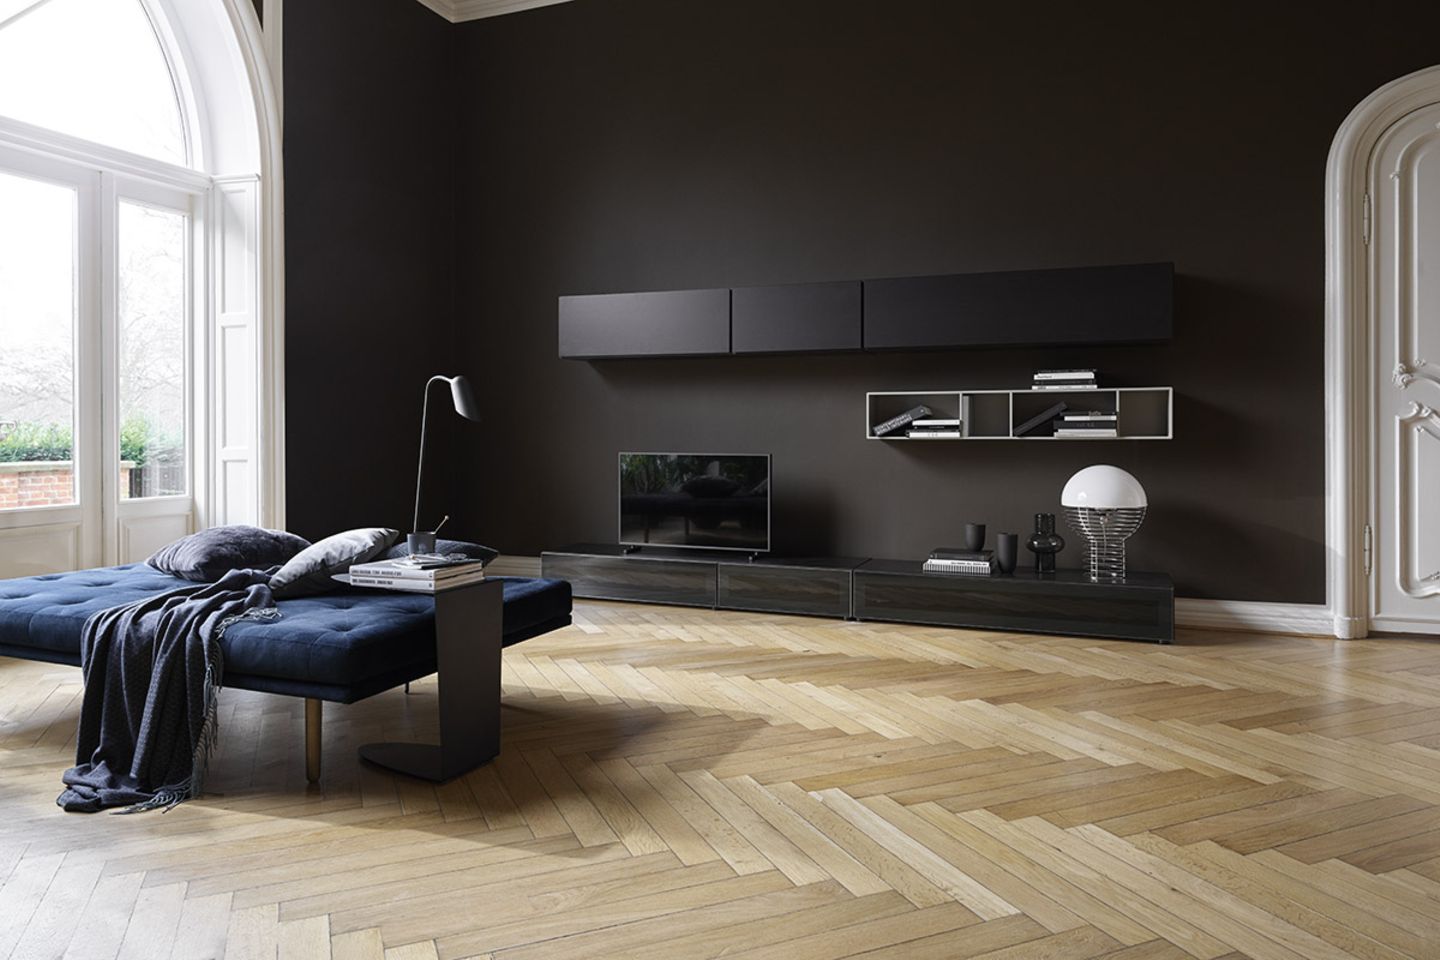 Tagesbett "Fusion" von BoConcept in einem geräumigen Wohnzimmer mit Parkettboden und schwarzer Wand